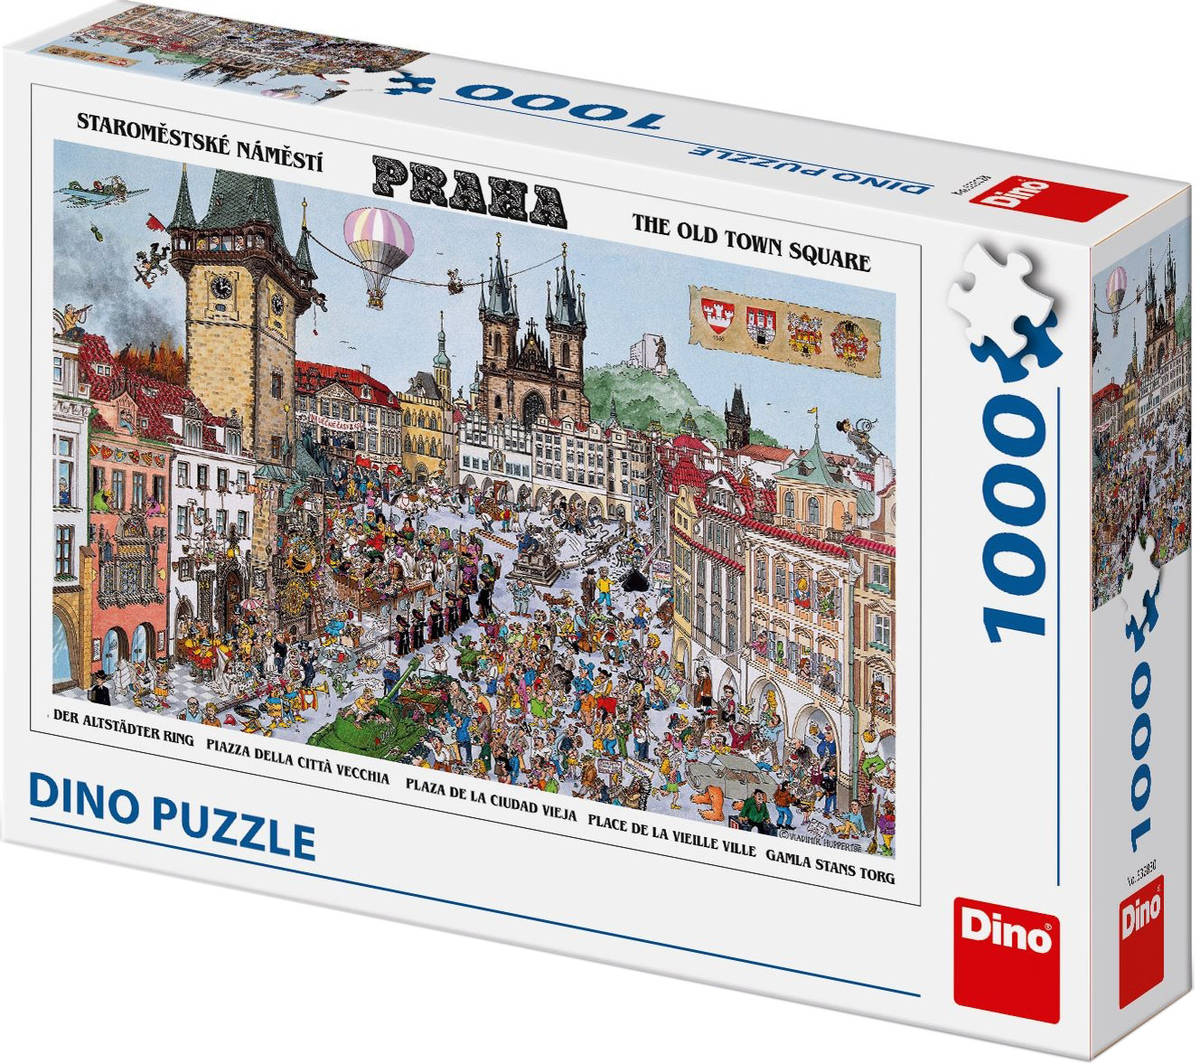 Fotografie DINO Puzzle Staroměstské náměstí 66x47cm skládačka 1000 dílků